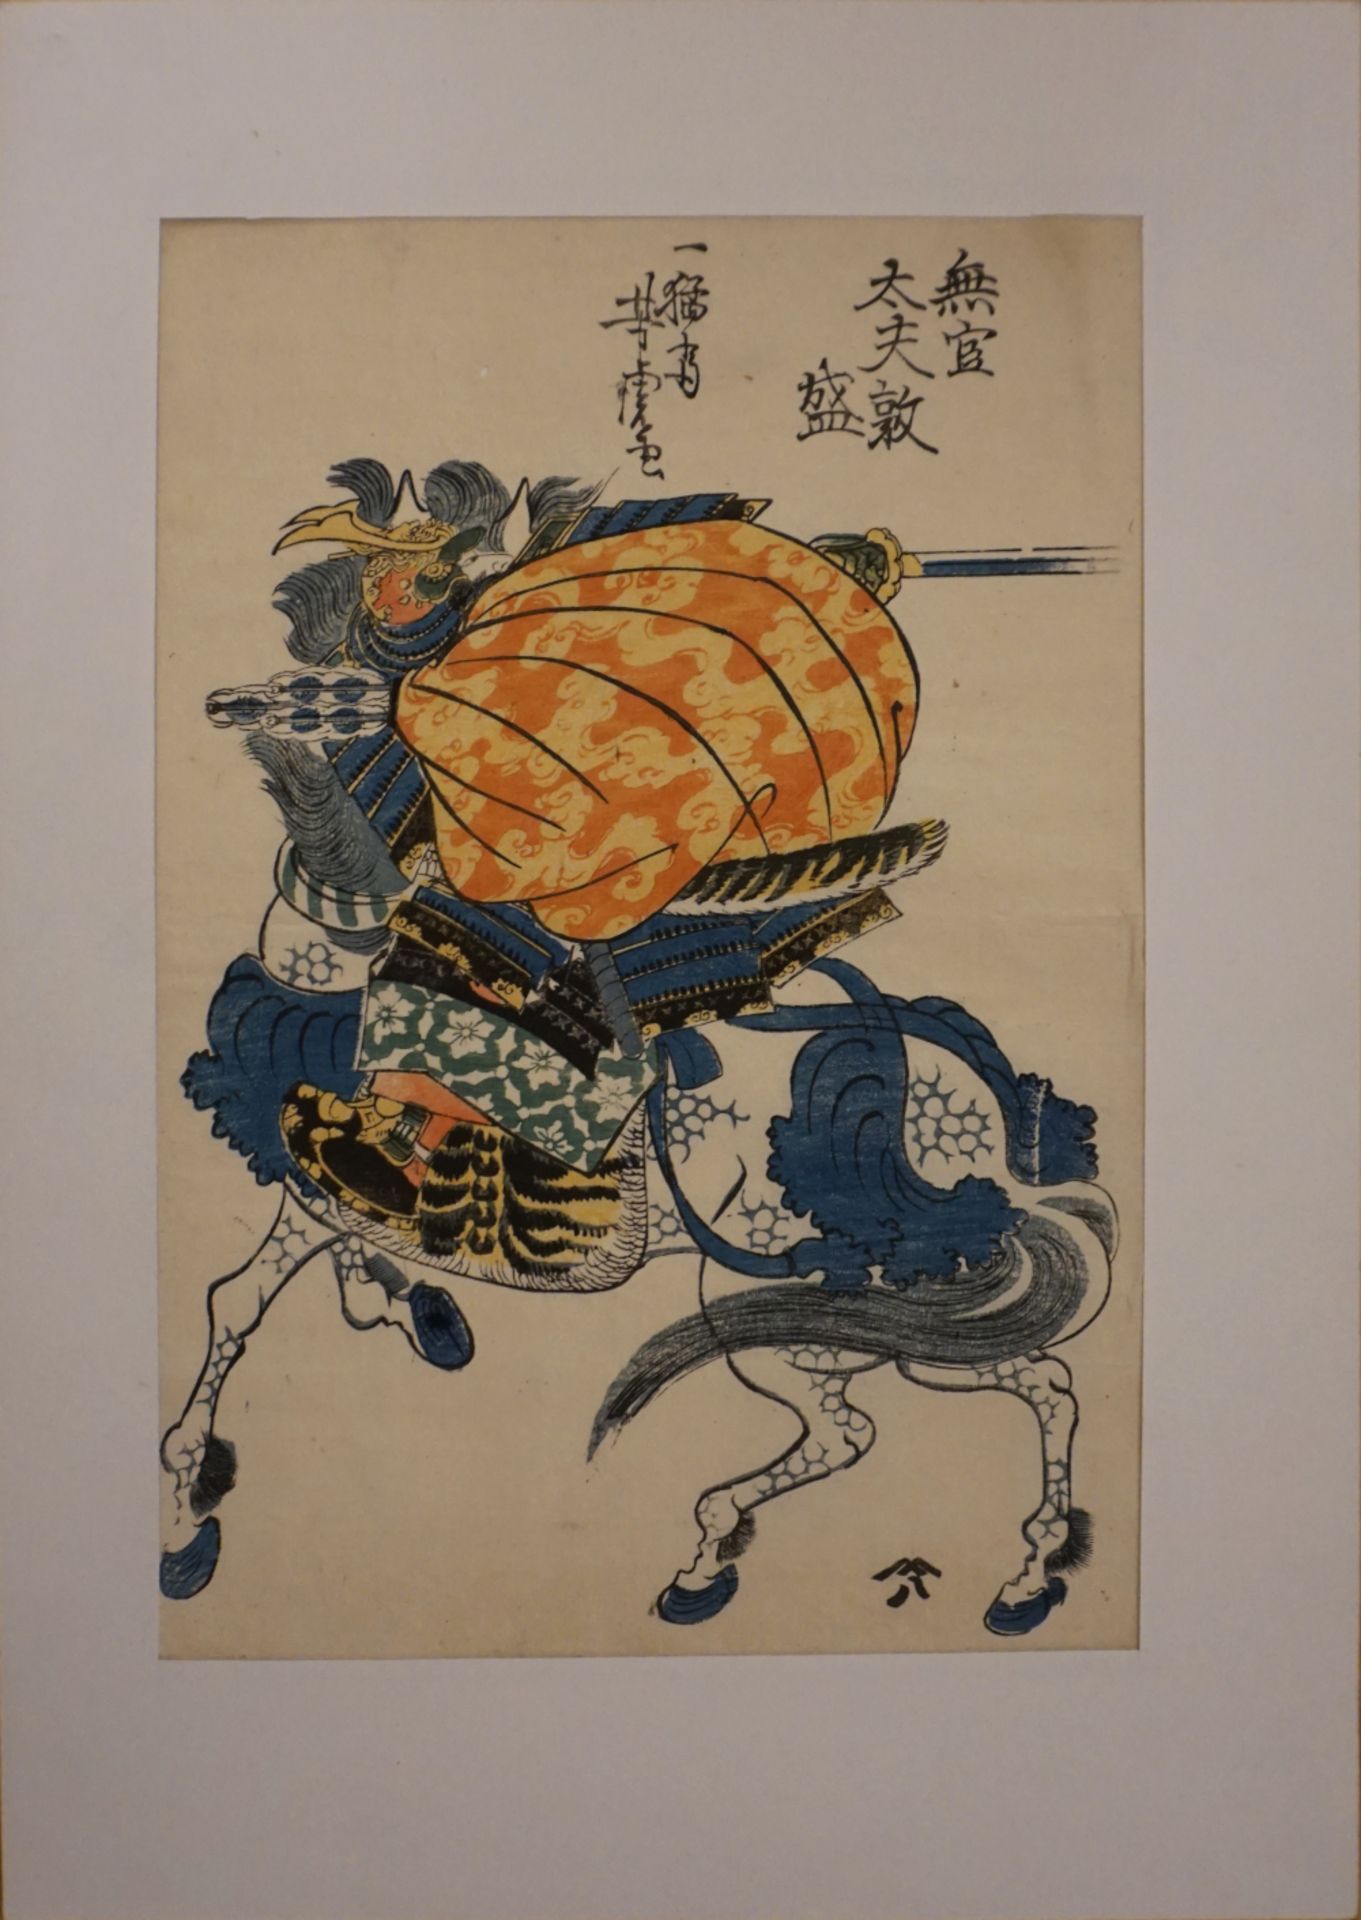 1 Holzschnitt auf Blatt wohl bez. YASHITO (wohl 19. Jh.) "Berittener Samurai" dat. ca. 1880, ca. 32x